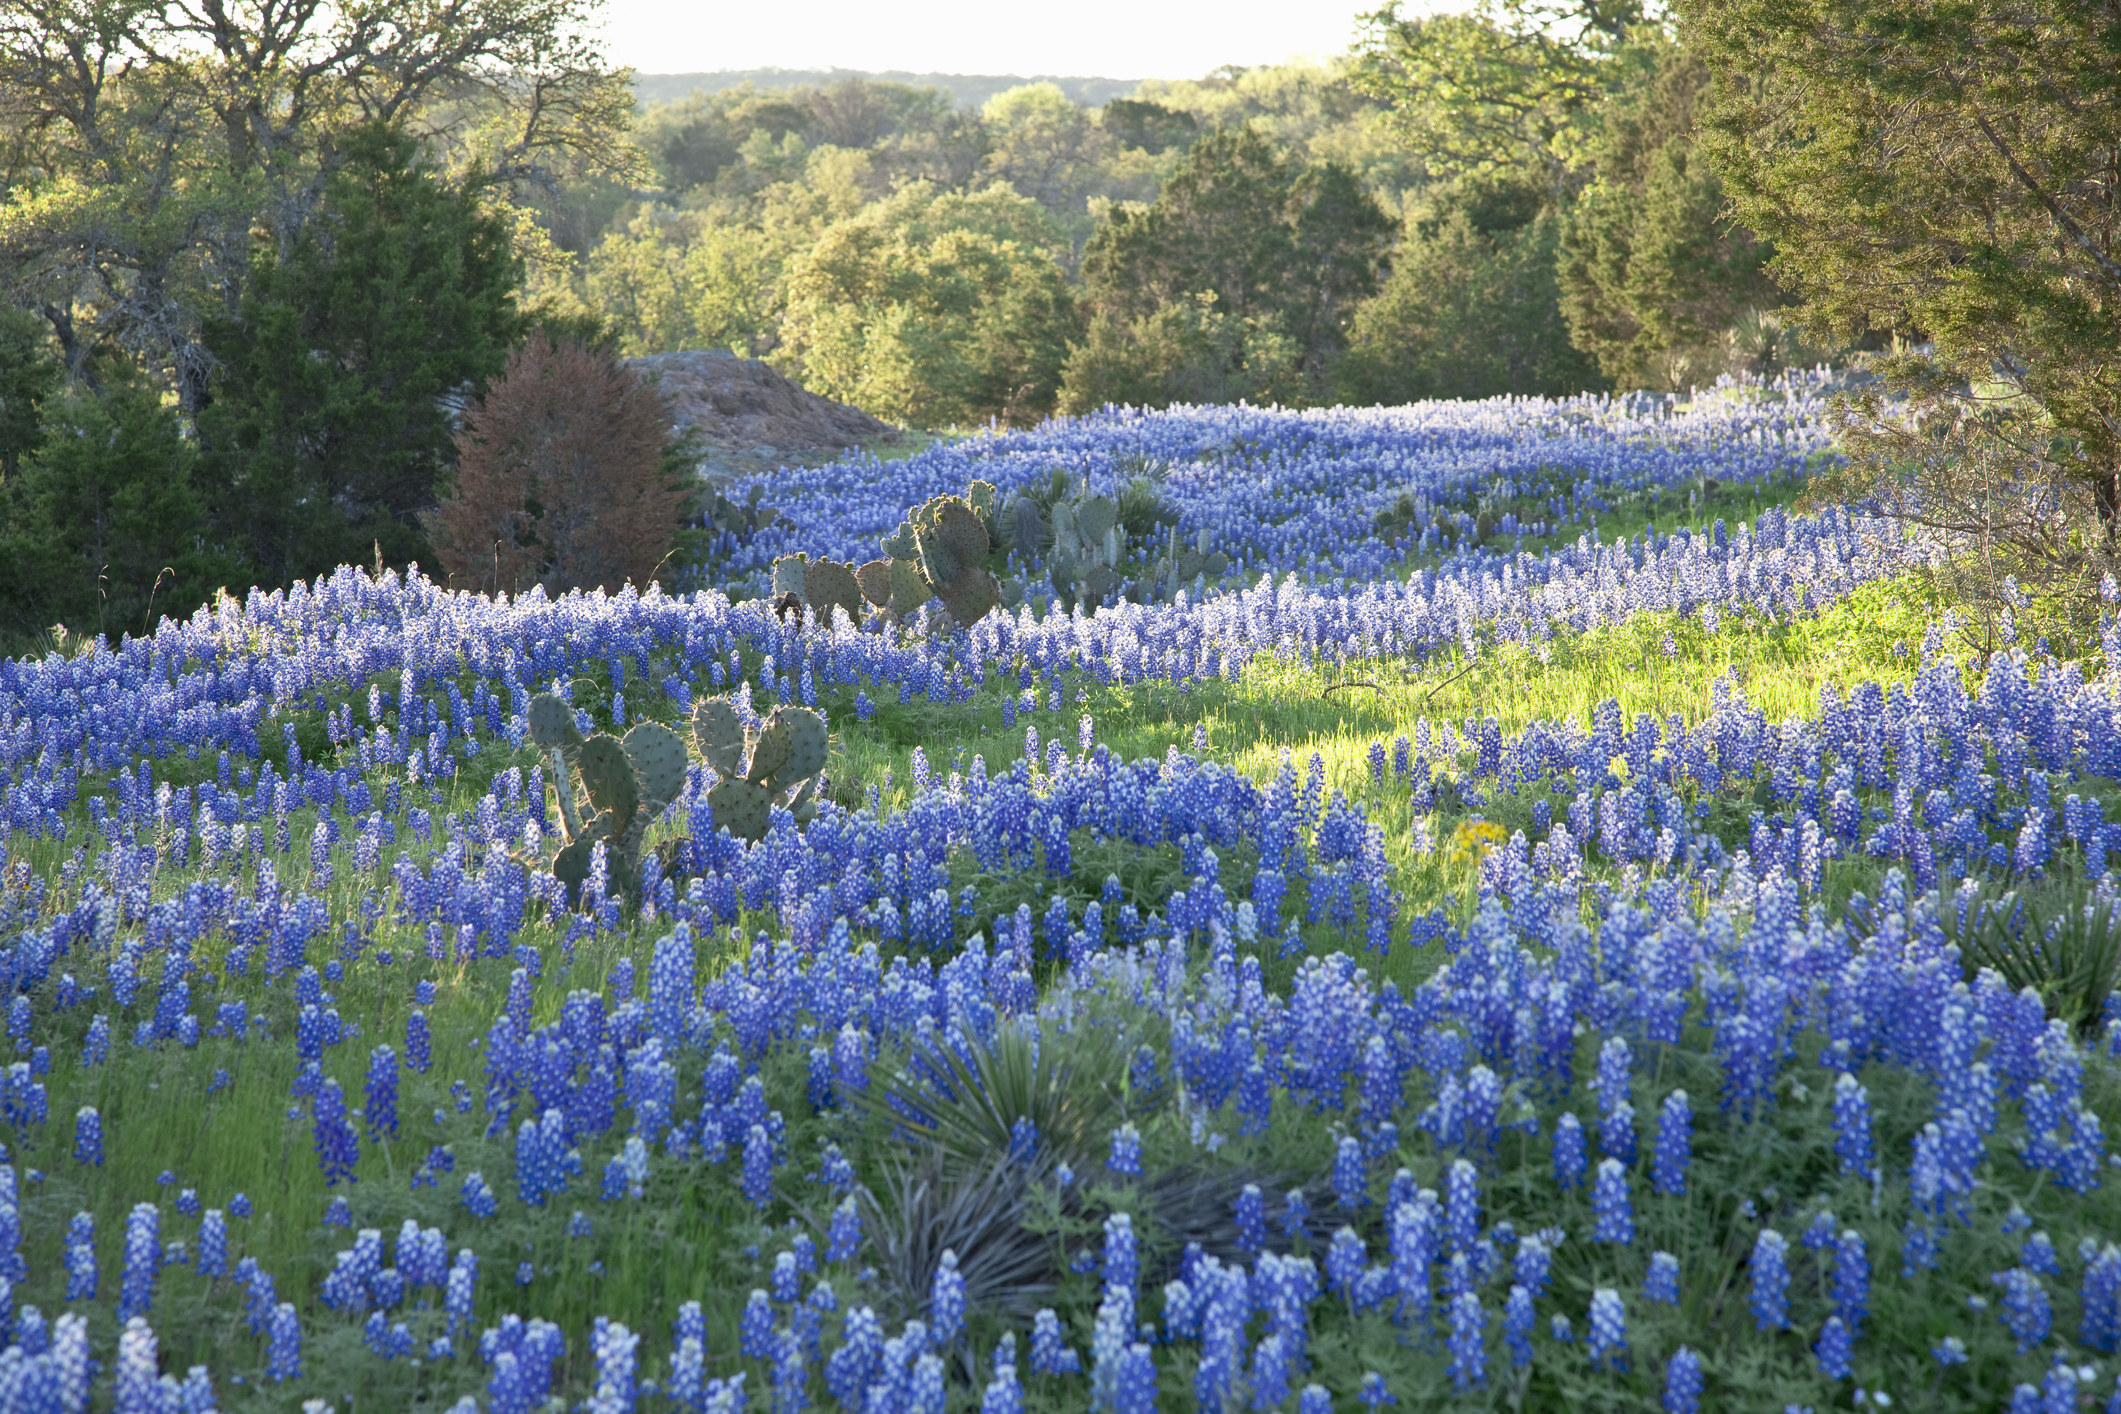 A field of Texas bluebonnets.